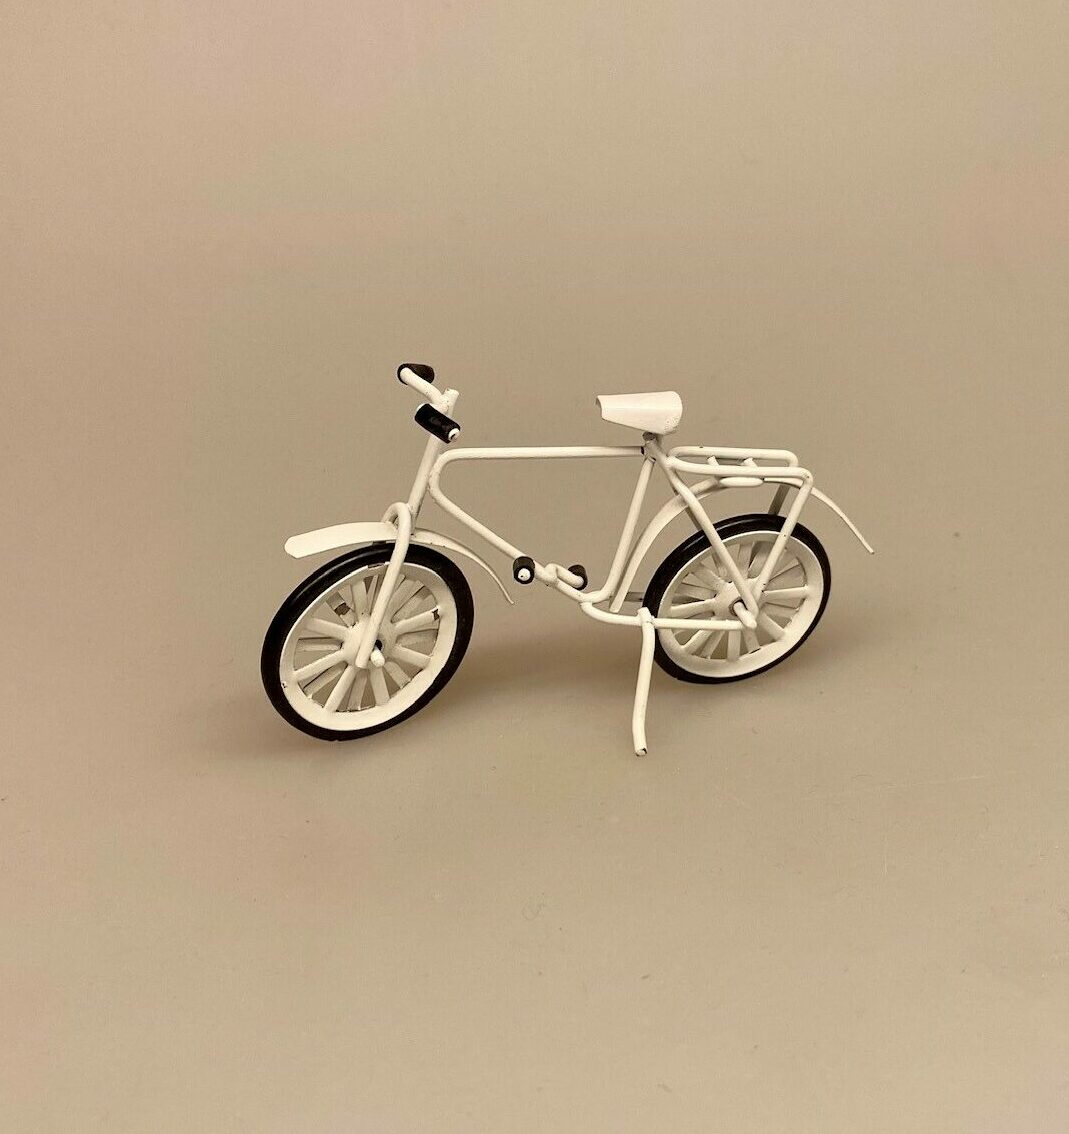 Kun én af Hver - Miniature Børnecykel, Kun én af Hver - Miniature Børnecykel, cykel, barnecykel, dukkehus, ting, til, tilbehør, legetøj, dukkehustilbehør, dukkehusting, sangskjuler, konfirmation, sjov, miniature, cykel, børn, biti, ribe, symbolsk, gave pigecykel, drengecykel, 1:12